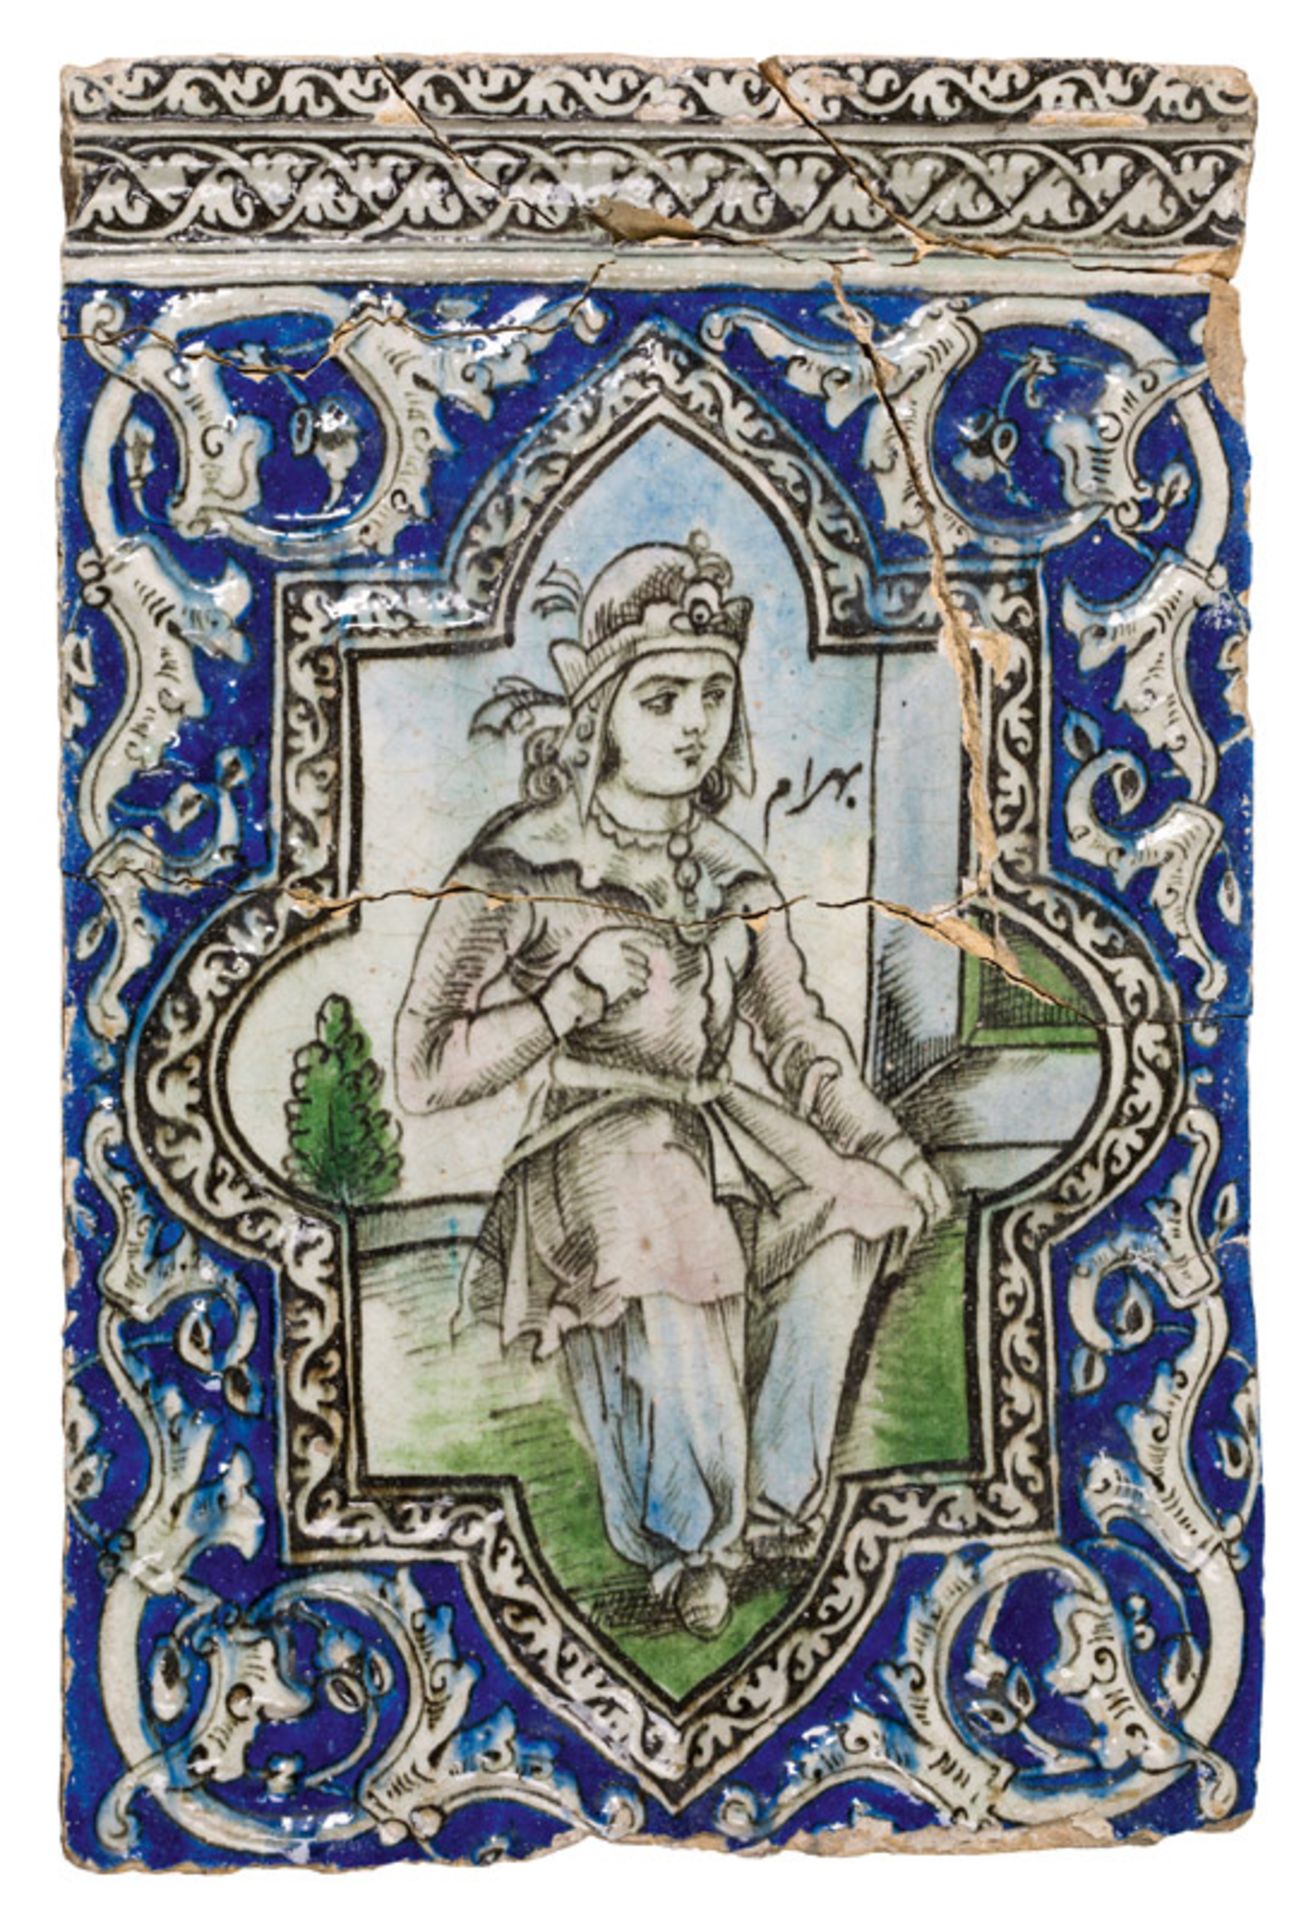 Große Kachel, Iran, wohl 17. Jh. Keramik, heller Scherben, farbig glasiert; frontseitig die als "